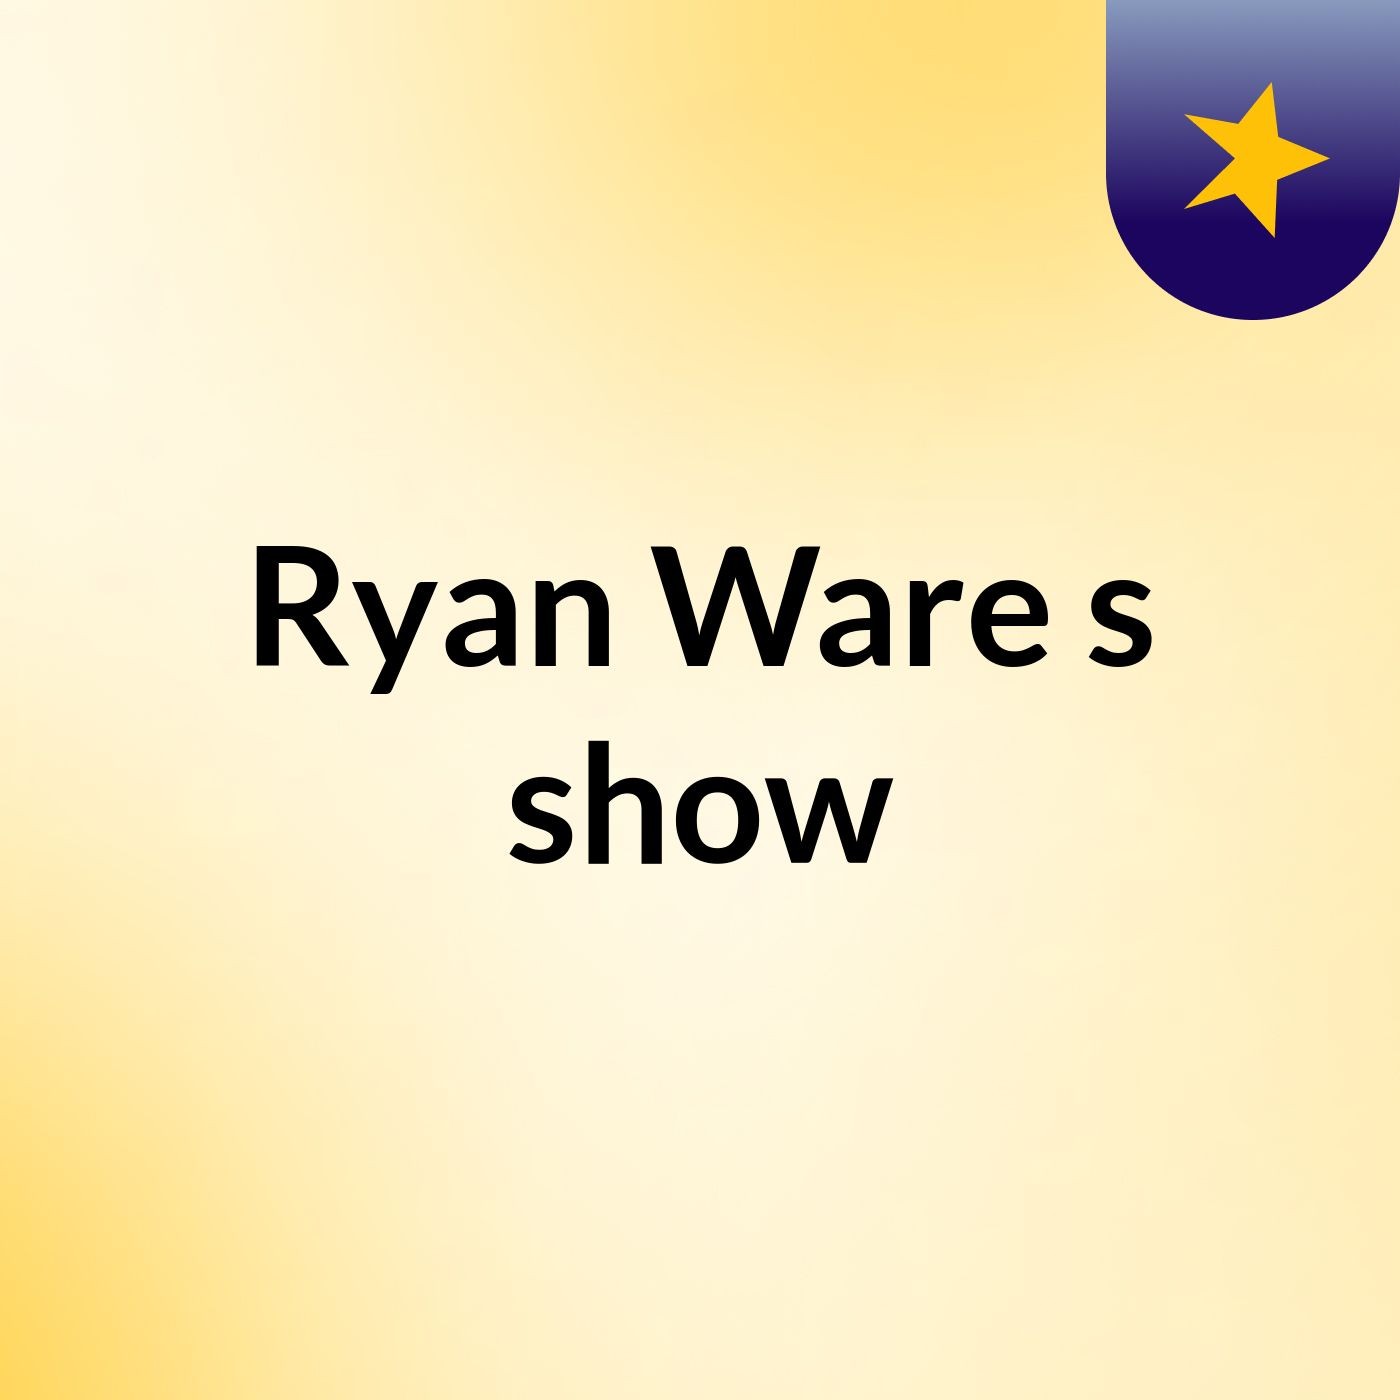 Ryan Ware's show